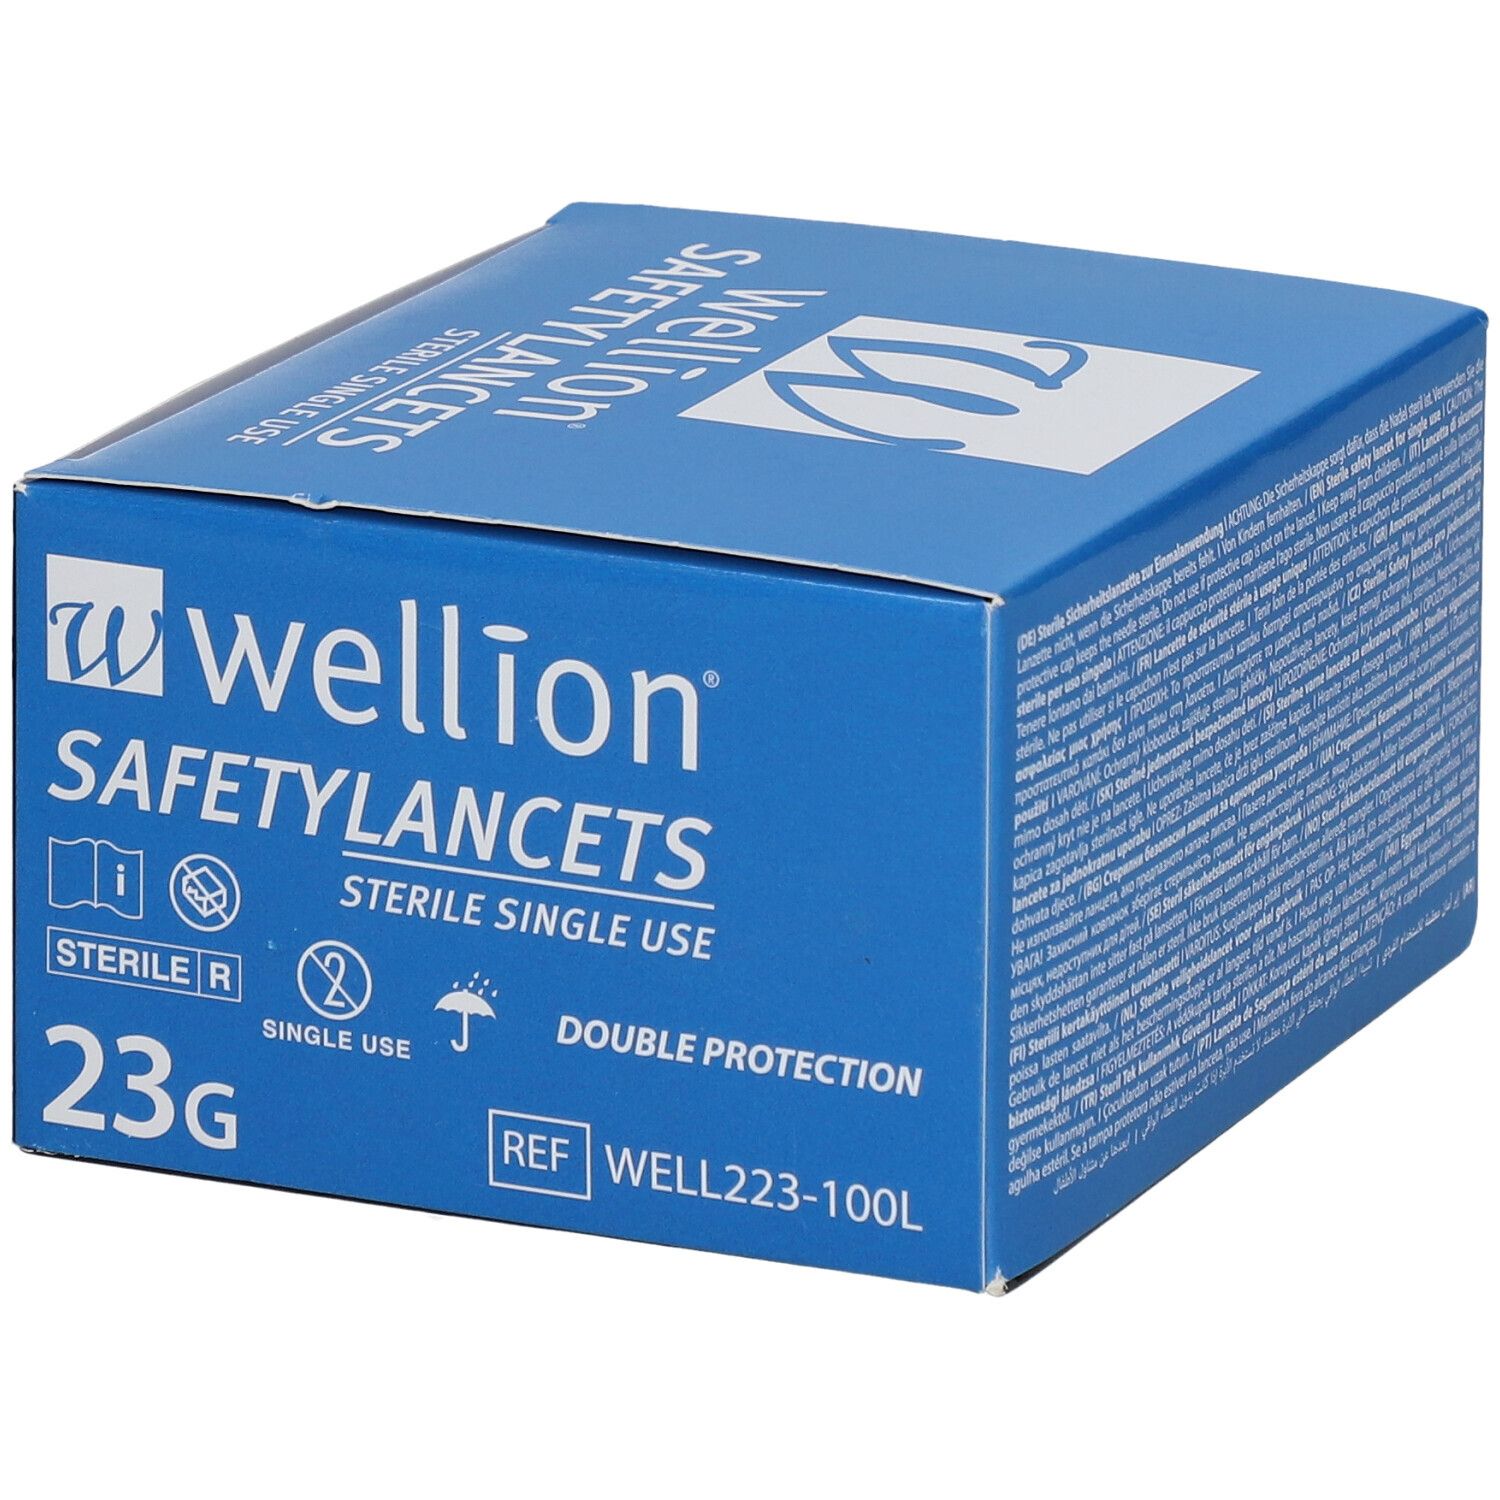 Wellion® Safetylancets steril 2,2 mm 23 G